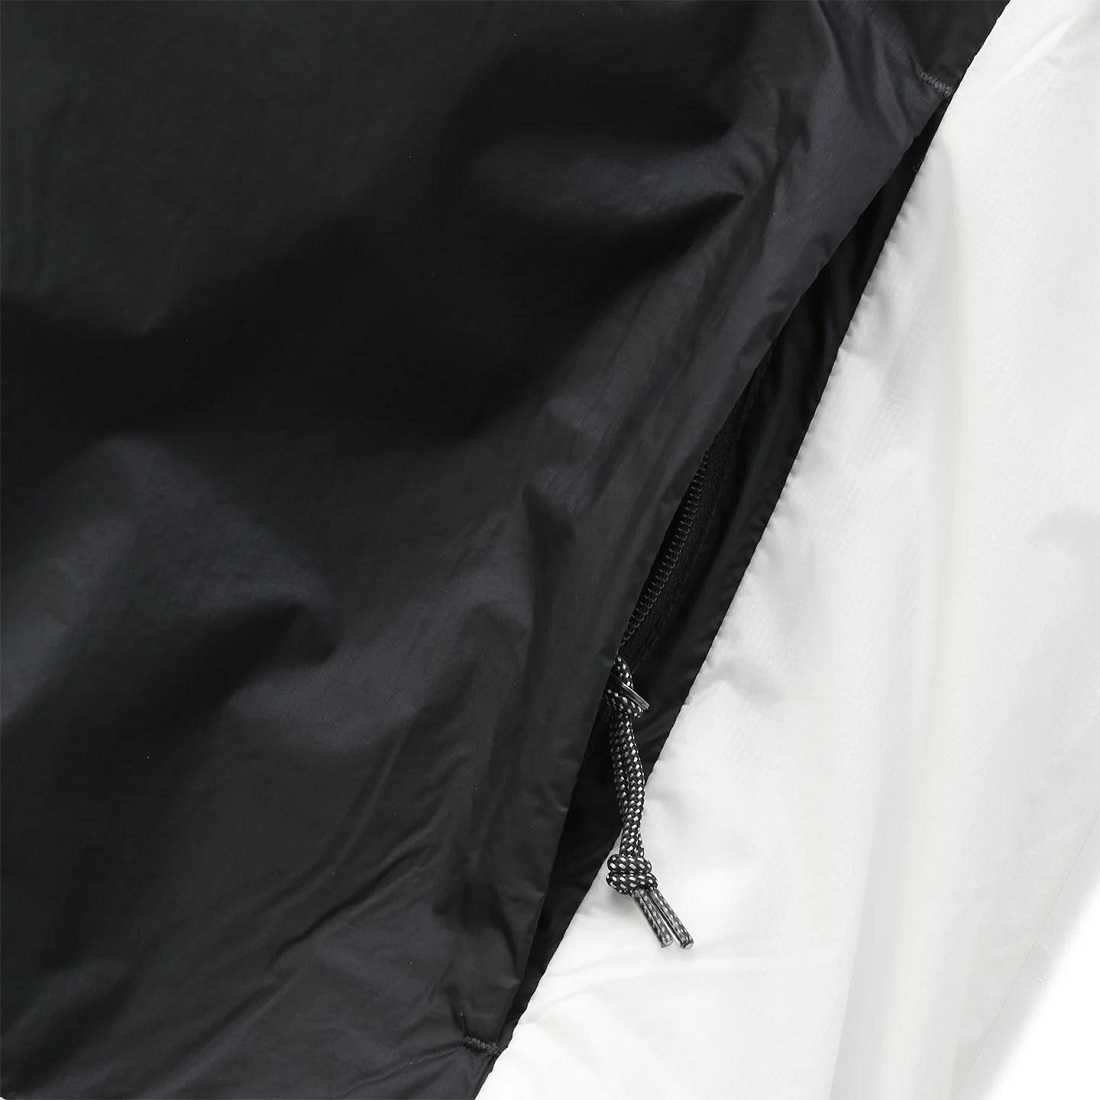 ナイキ ACG ウインドプルーフ フーディジャケット Mサイズ 定価16500円 ブラック/ホワイト 撥水 ナイロン ウィンドブレーカー パッカブルの画像8